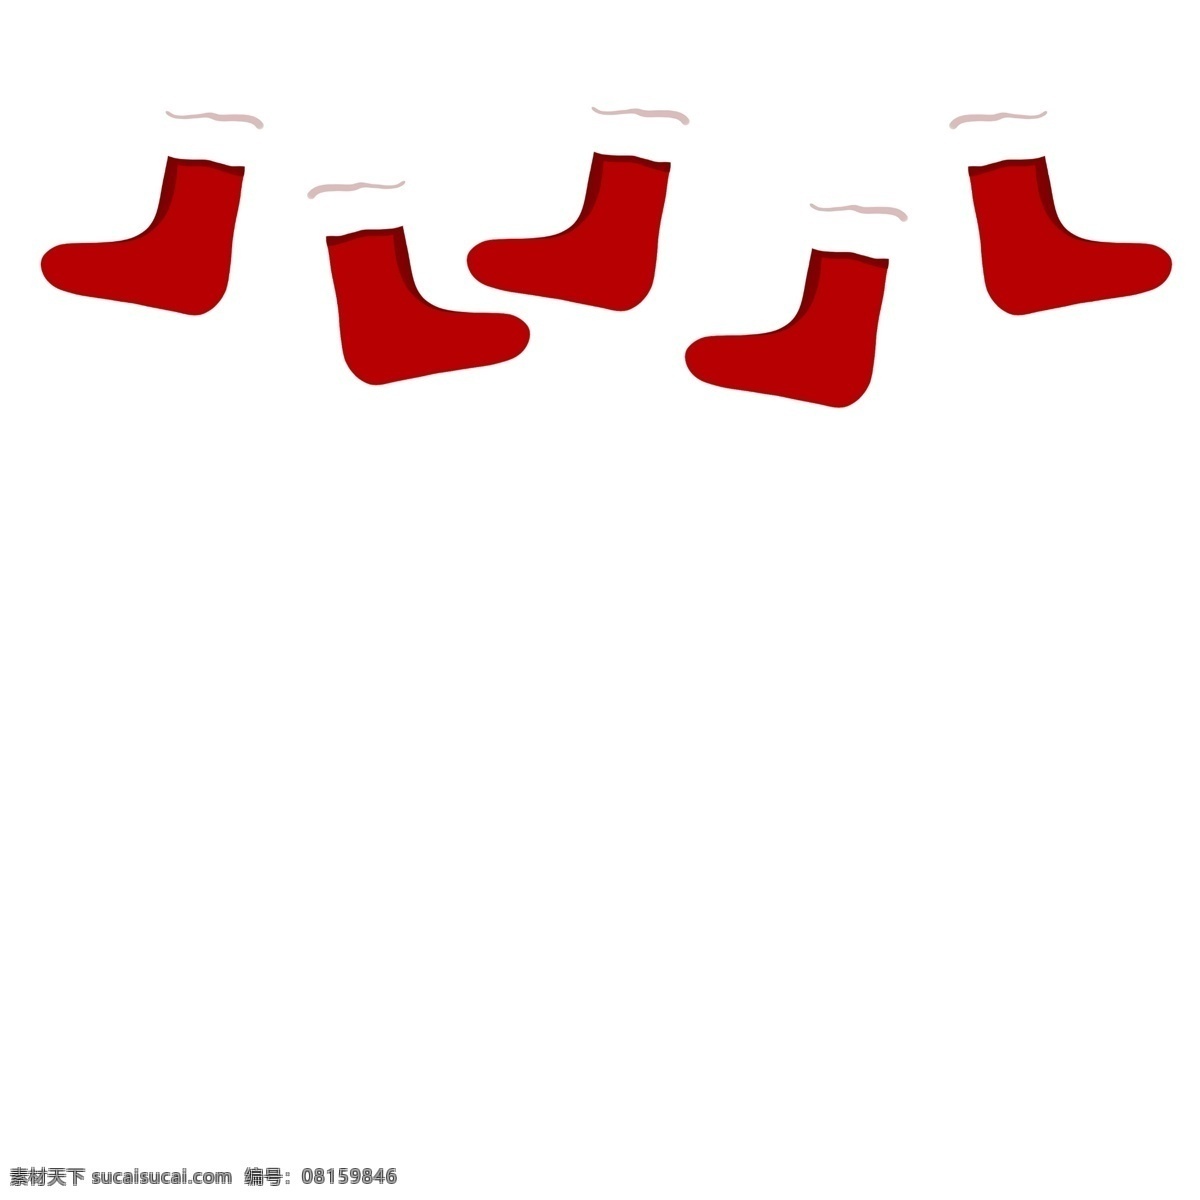 手绘 矢量 卡通 悬挂 圣诞节 红色 袜子 免抠 可爱 红色袜子 礼物 圣诞快乐 喜气洋洋 庆祝 西方节日 顶部装饰 一排袜子